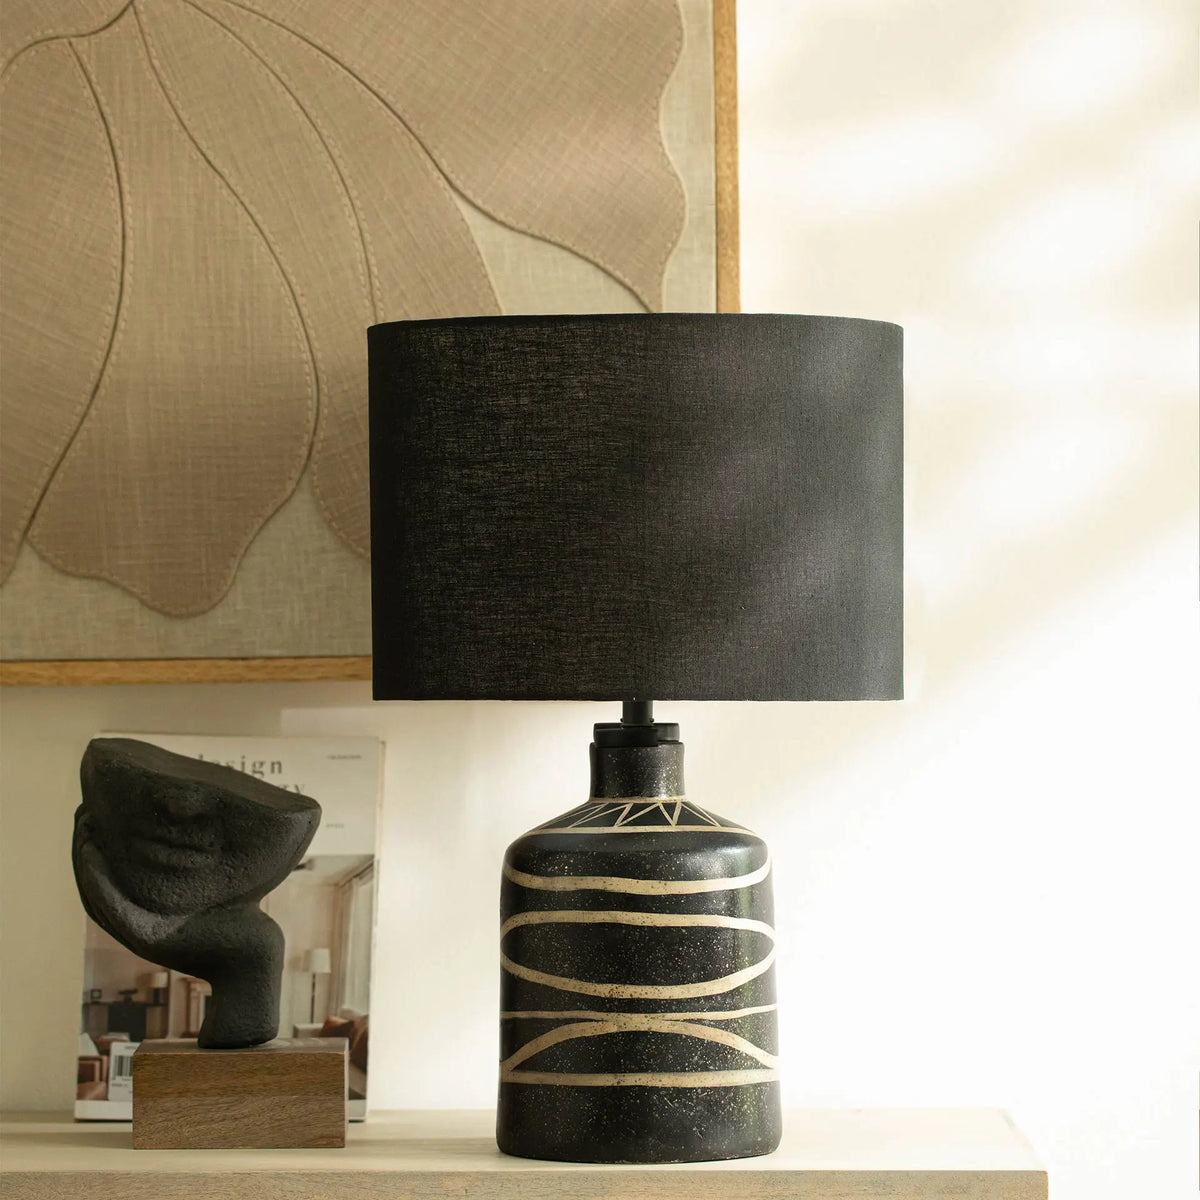 Siyah Terracotta Lamp With Shade